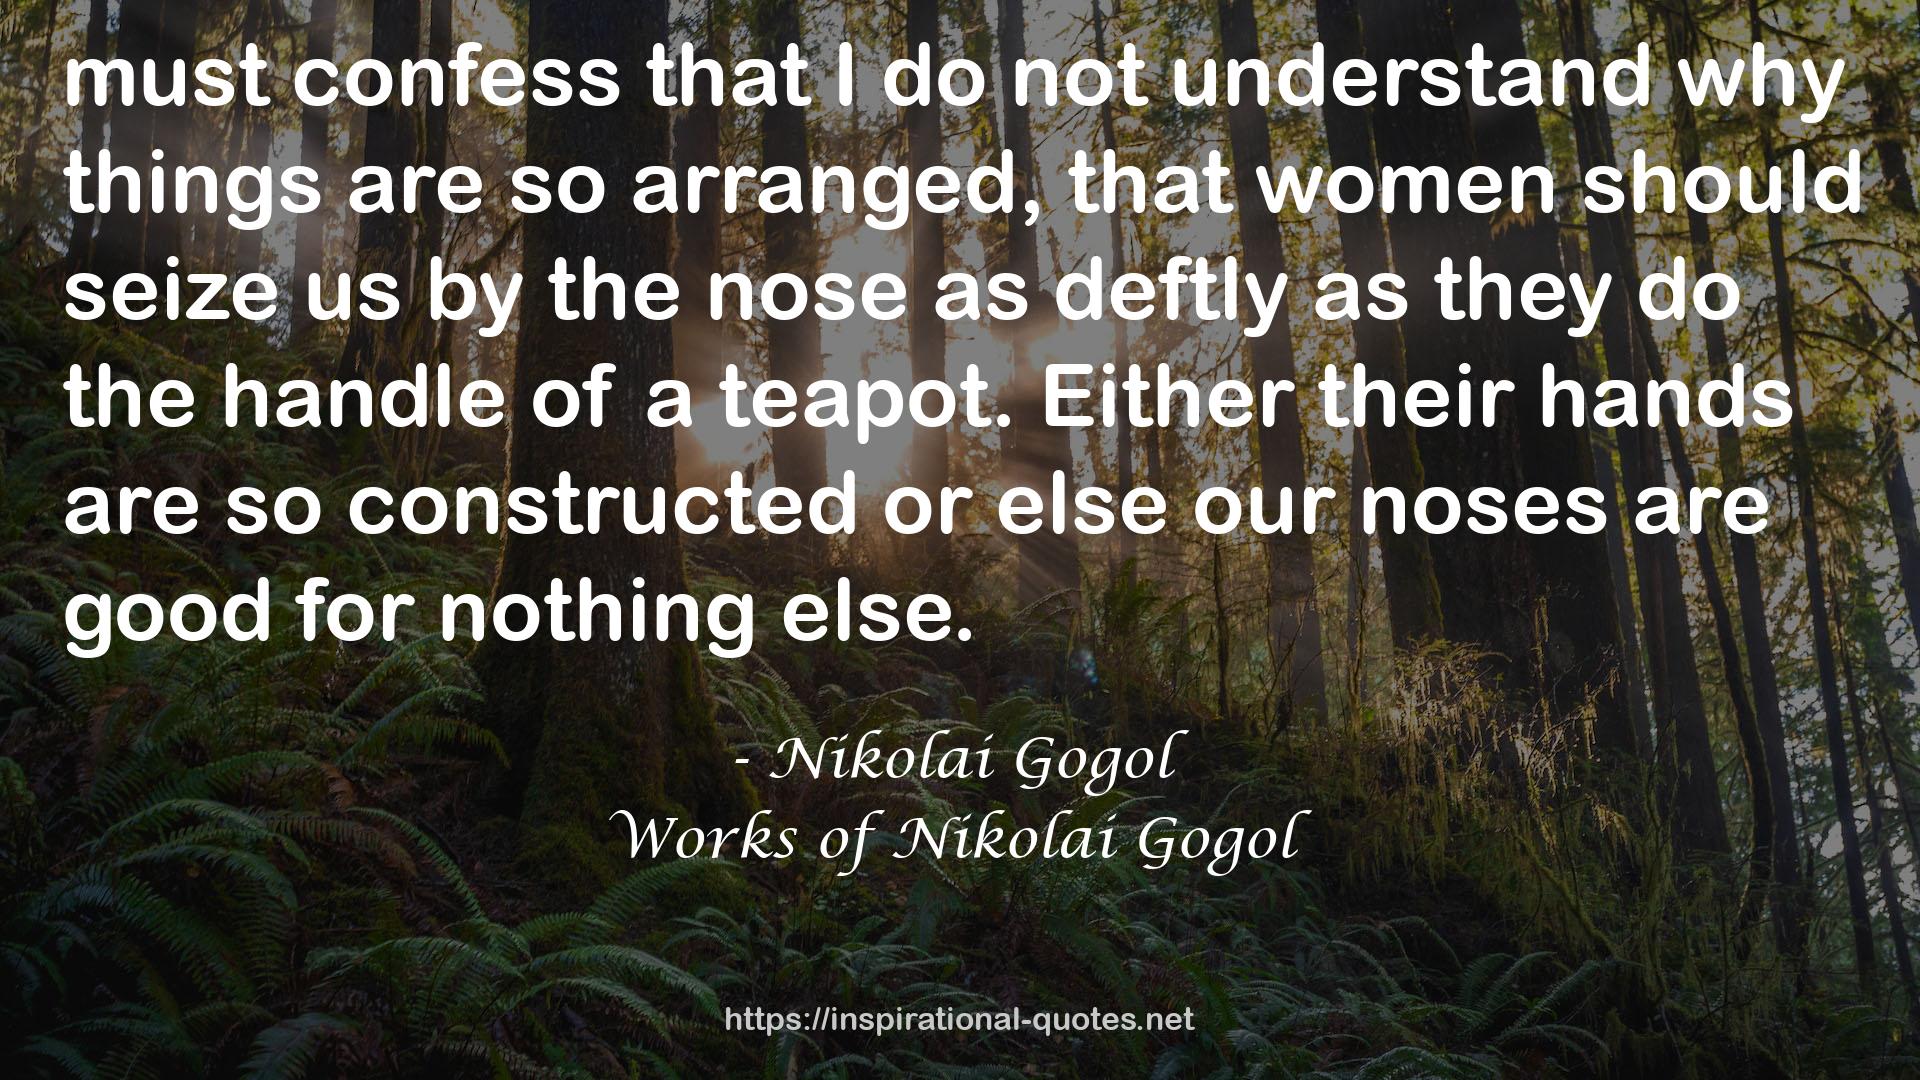 Works of Nikolai Gogol QUOTES